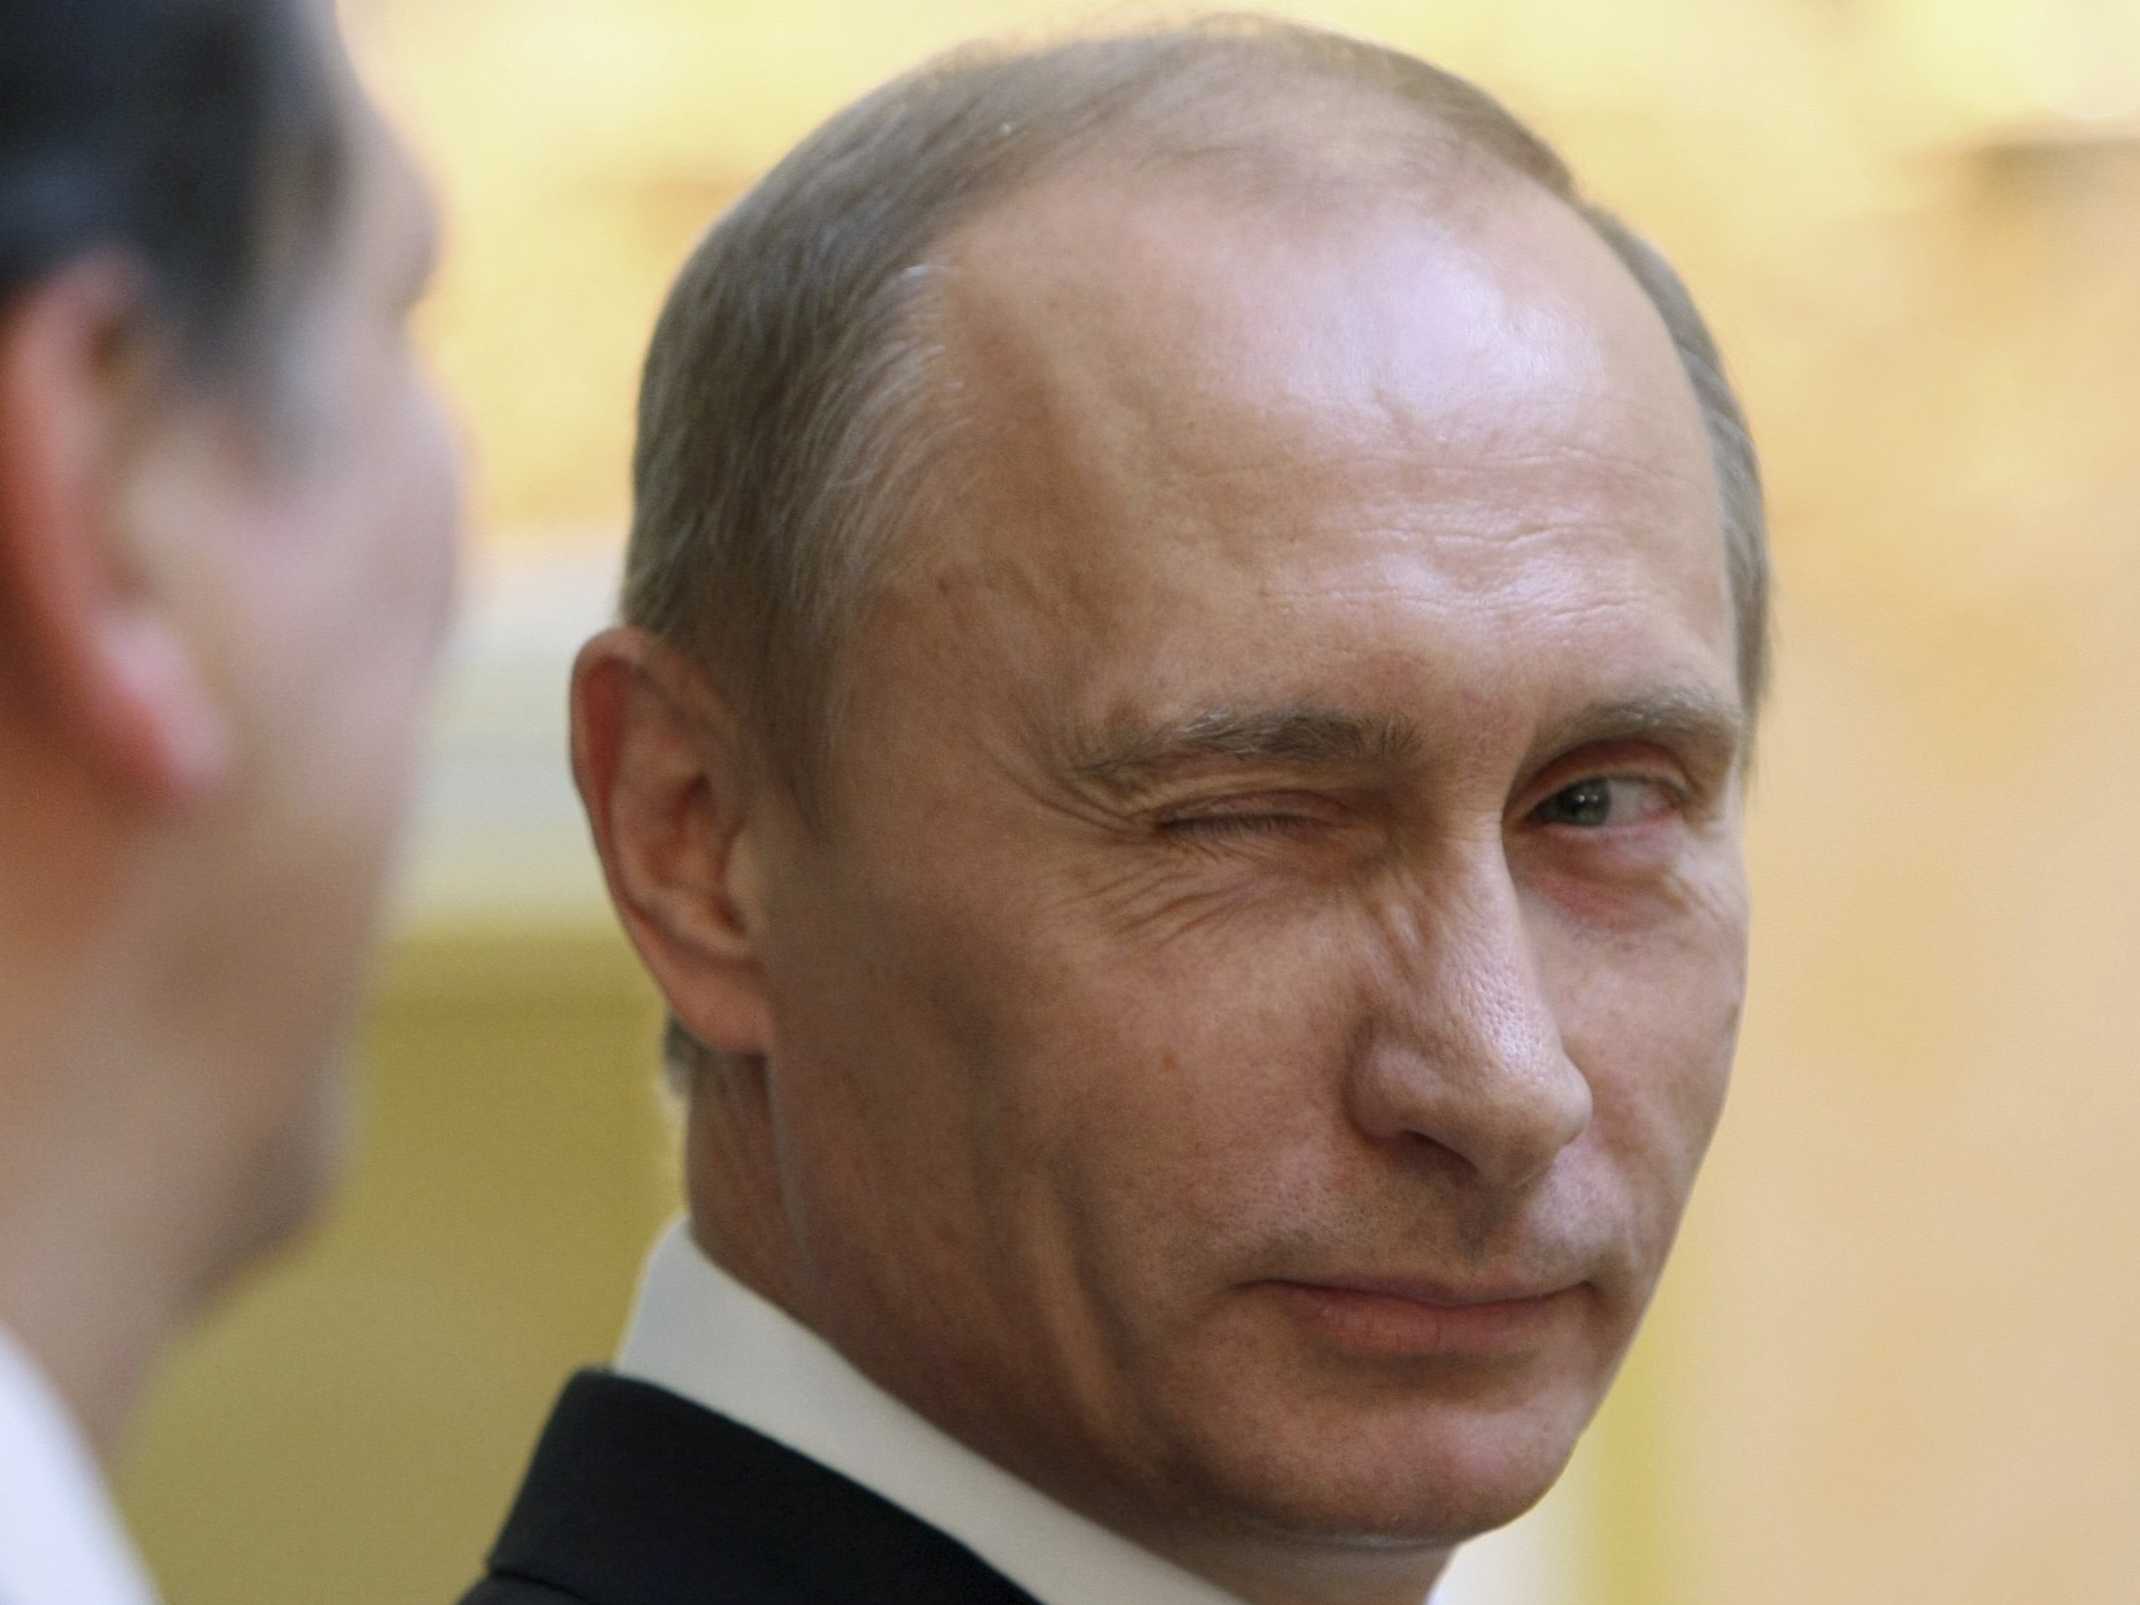 Vladimir Putin blinking Blank Meme Template